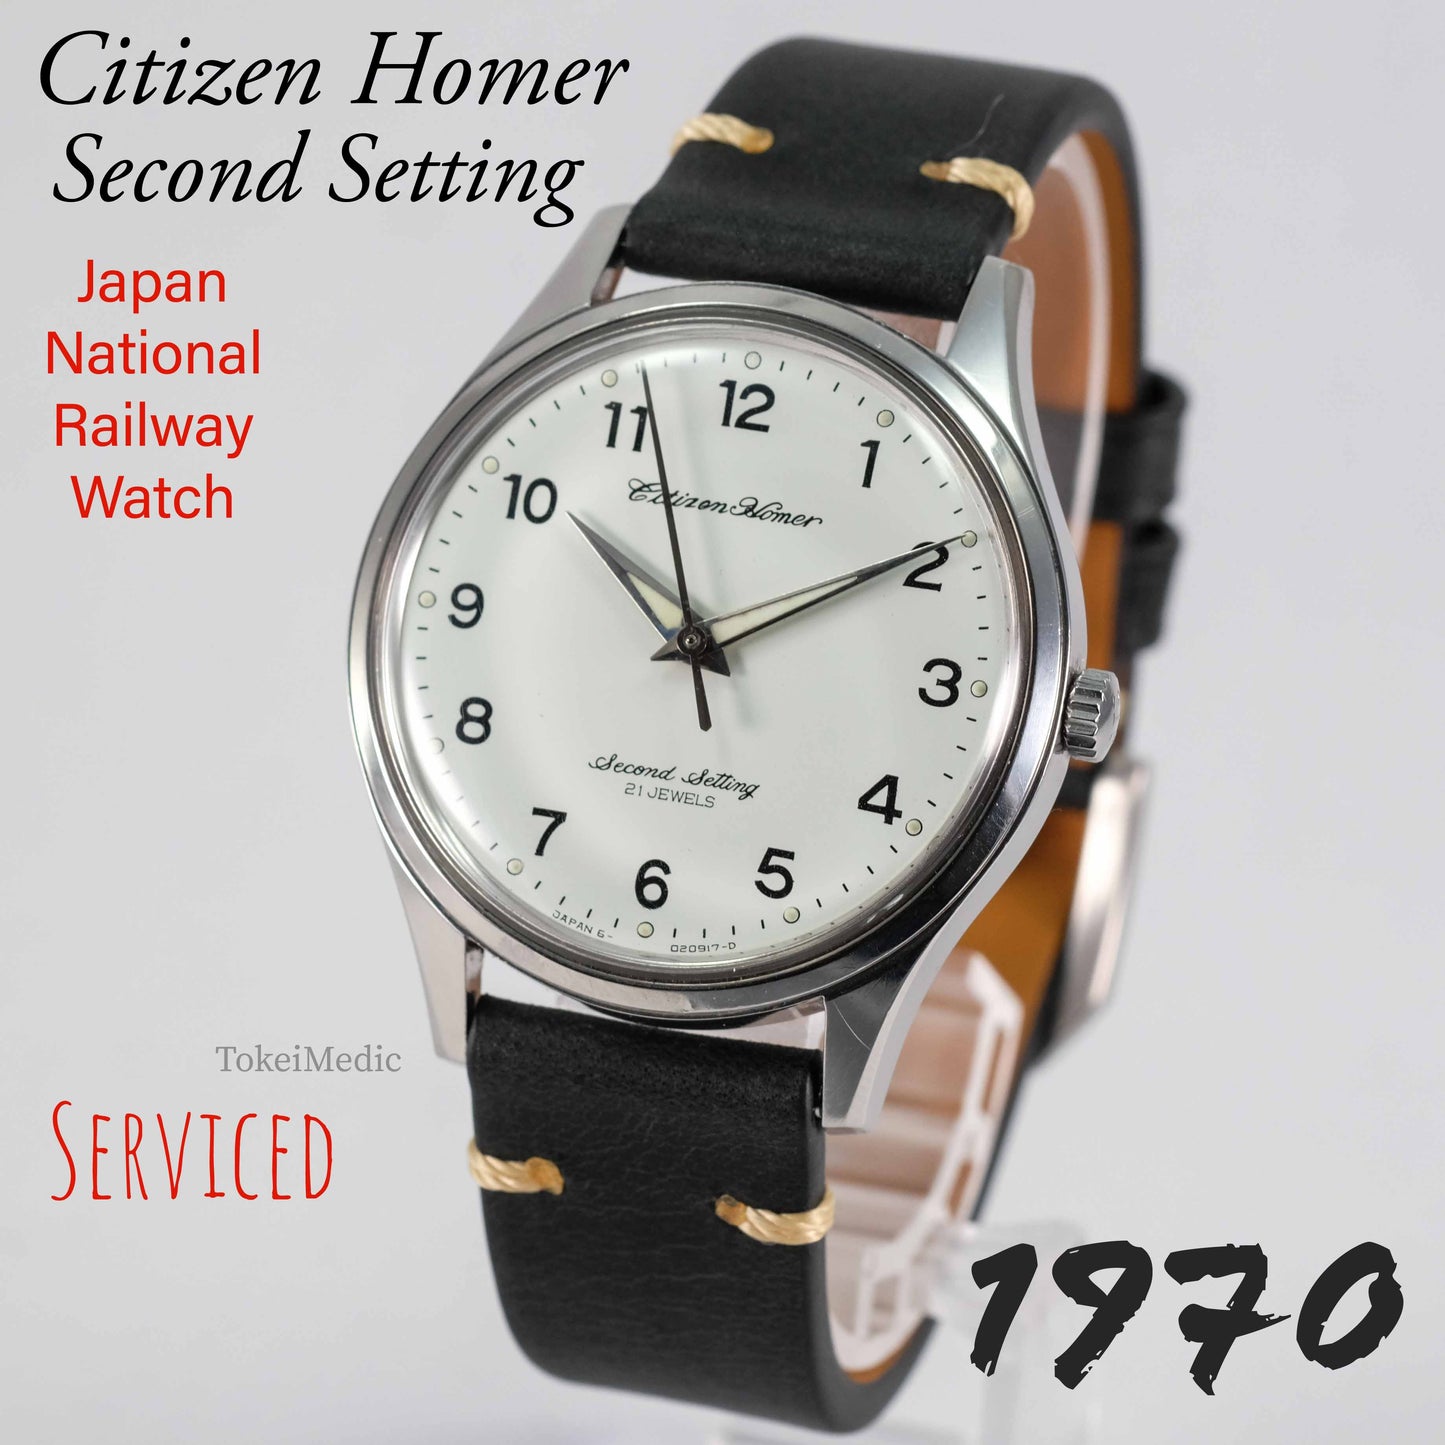 1970 Citizen Homer Second Setting Japan National Railway Watch